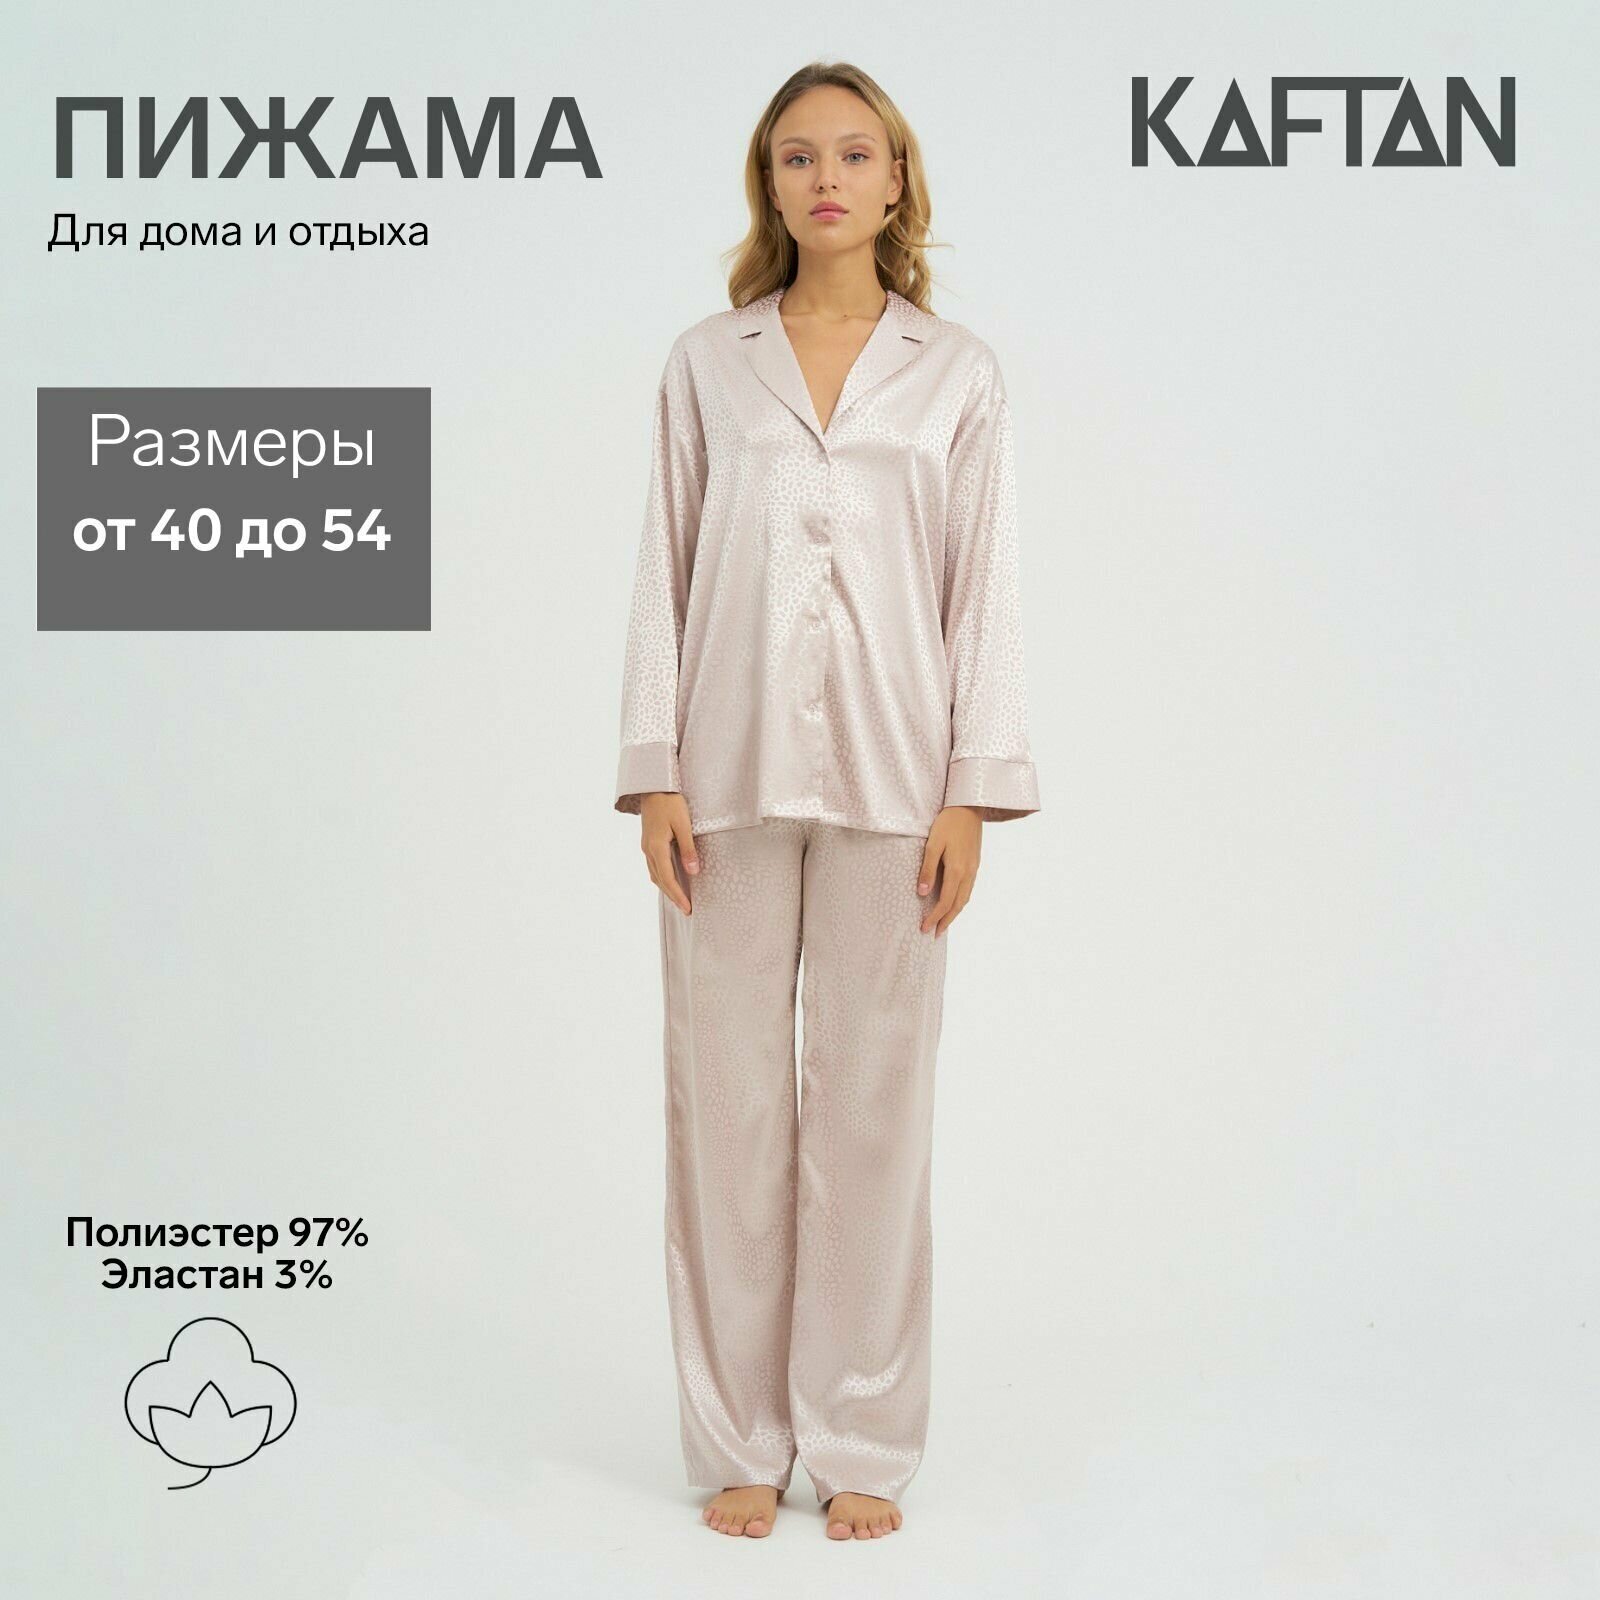 Пижама Kaftan